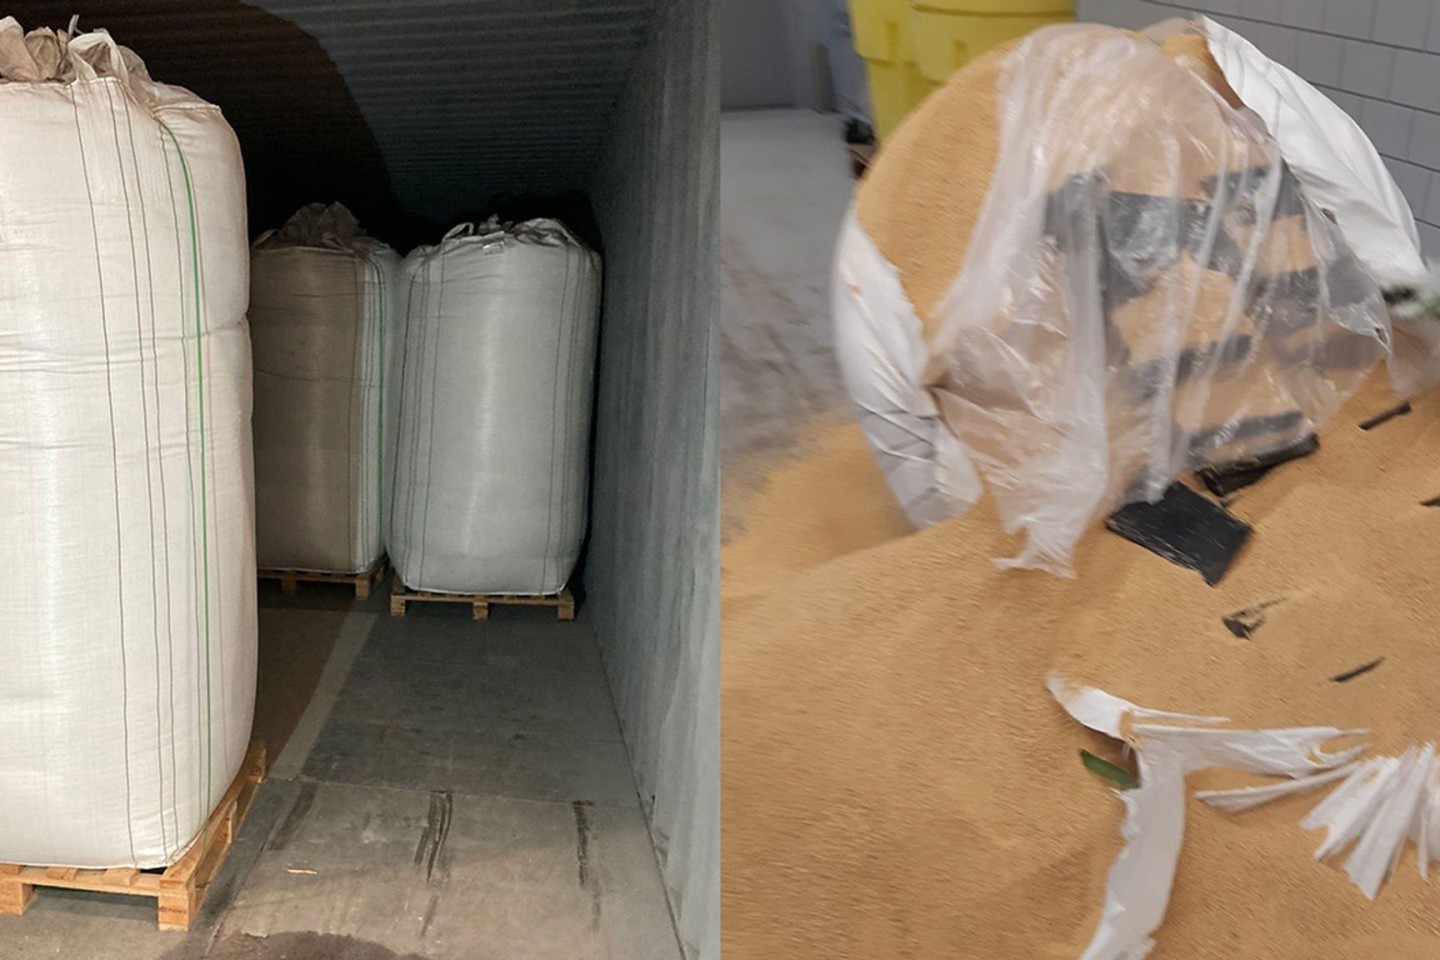 Die Kombo zeigt mit Soja gefüllte Säcke in einem Container (l) und Kokain-Päckchen, die in einem Sack mit Soja zu sehen sind.